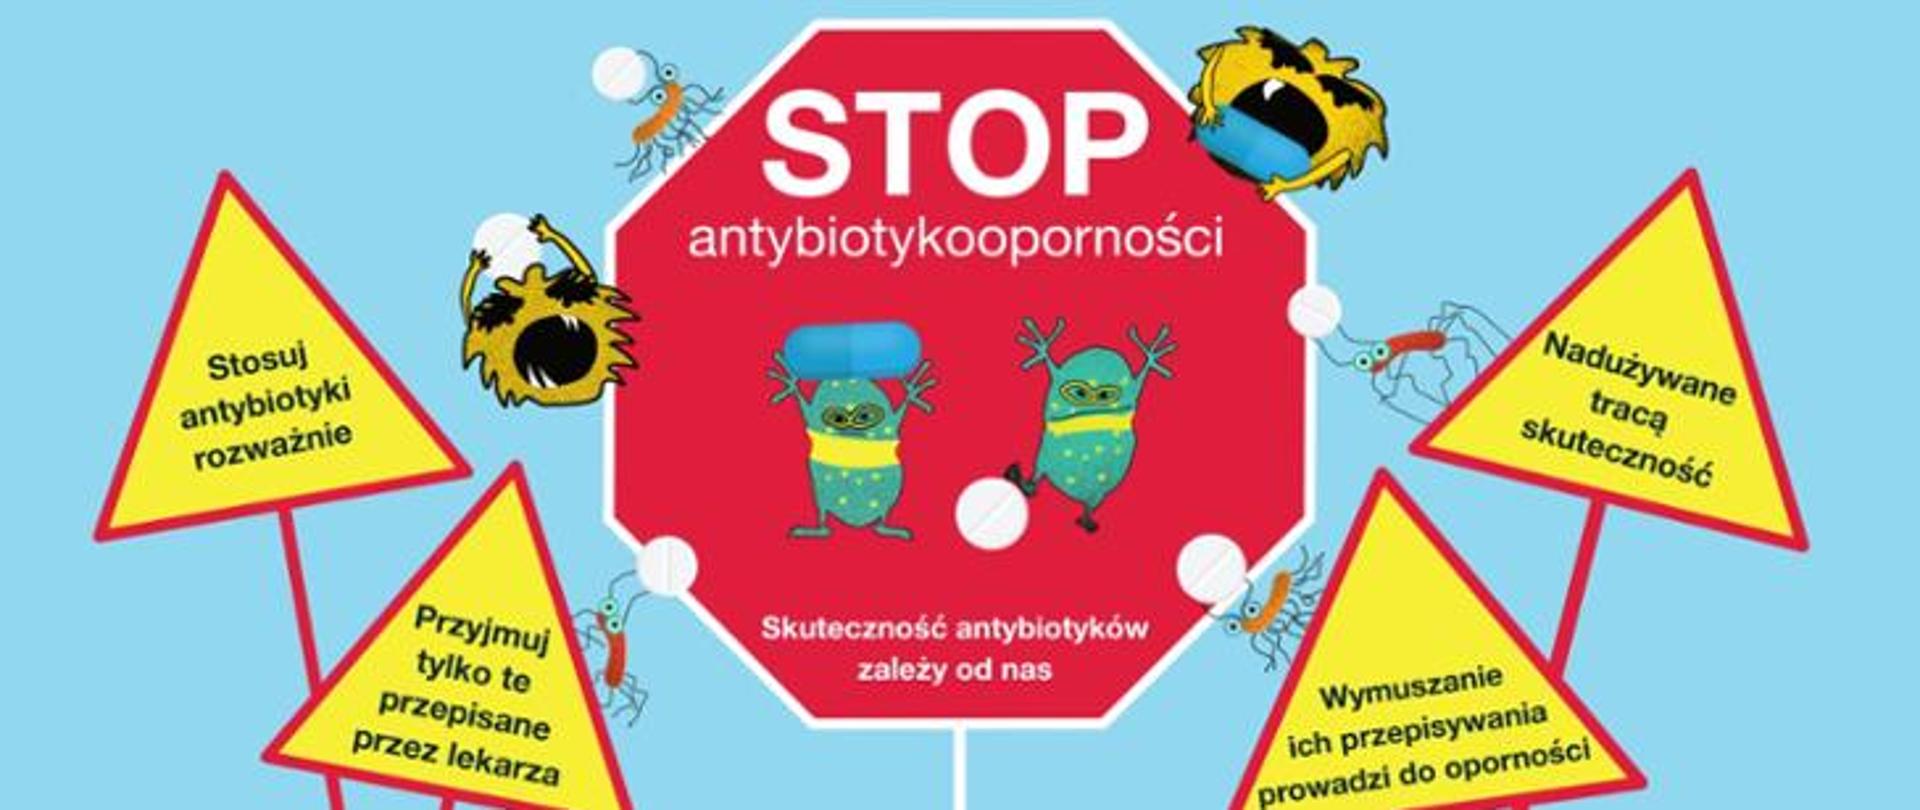 Stop antybiotykooporności